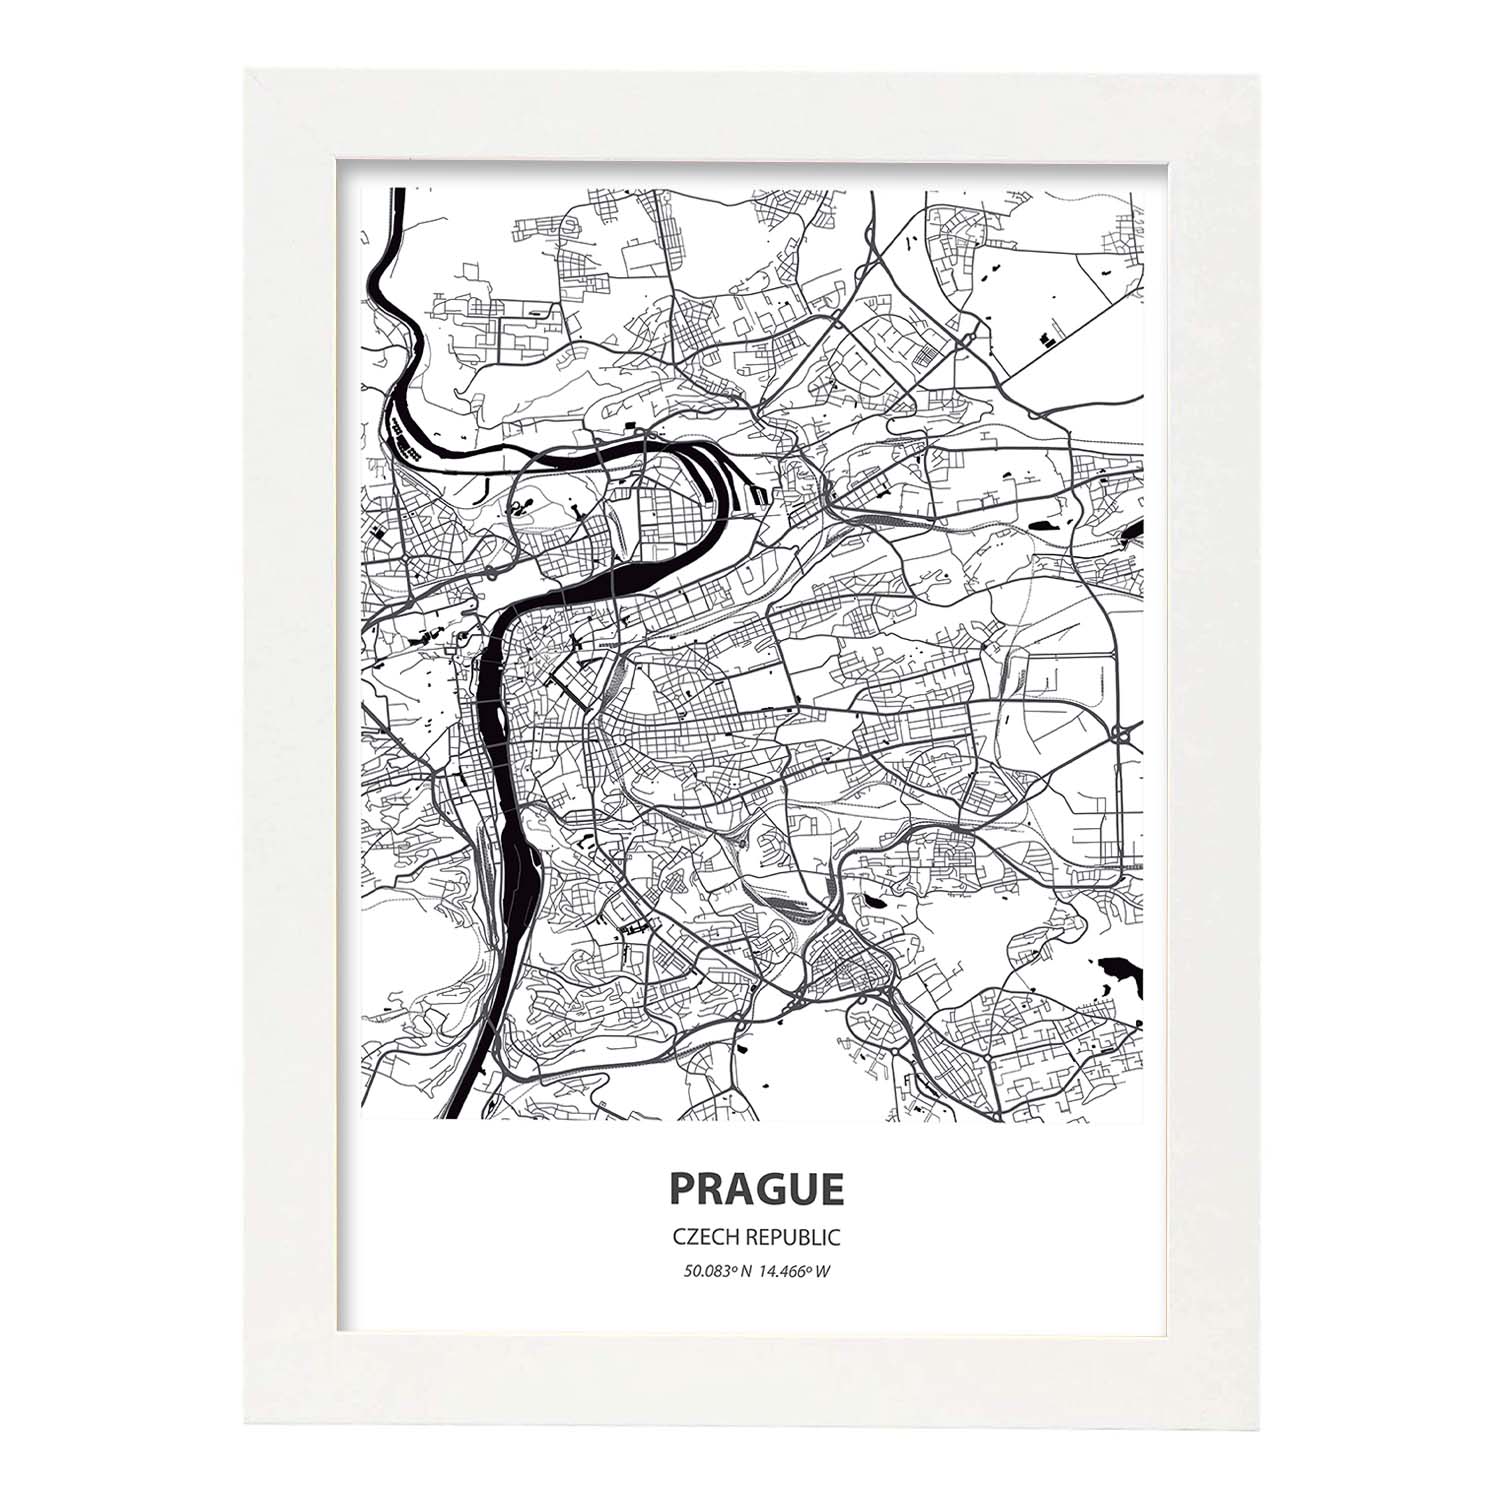 Poster con mapa de Prague - Republica Checa. Láminas de ciudades de Europa con mares y ríos en color negro.-Artwork-Nacnic-A4-Marco Blanco-Nacnic Estudio SL